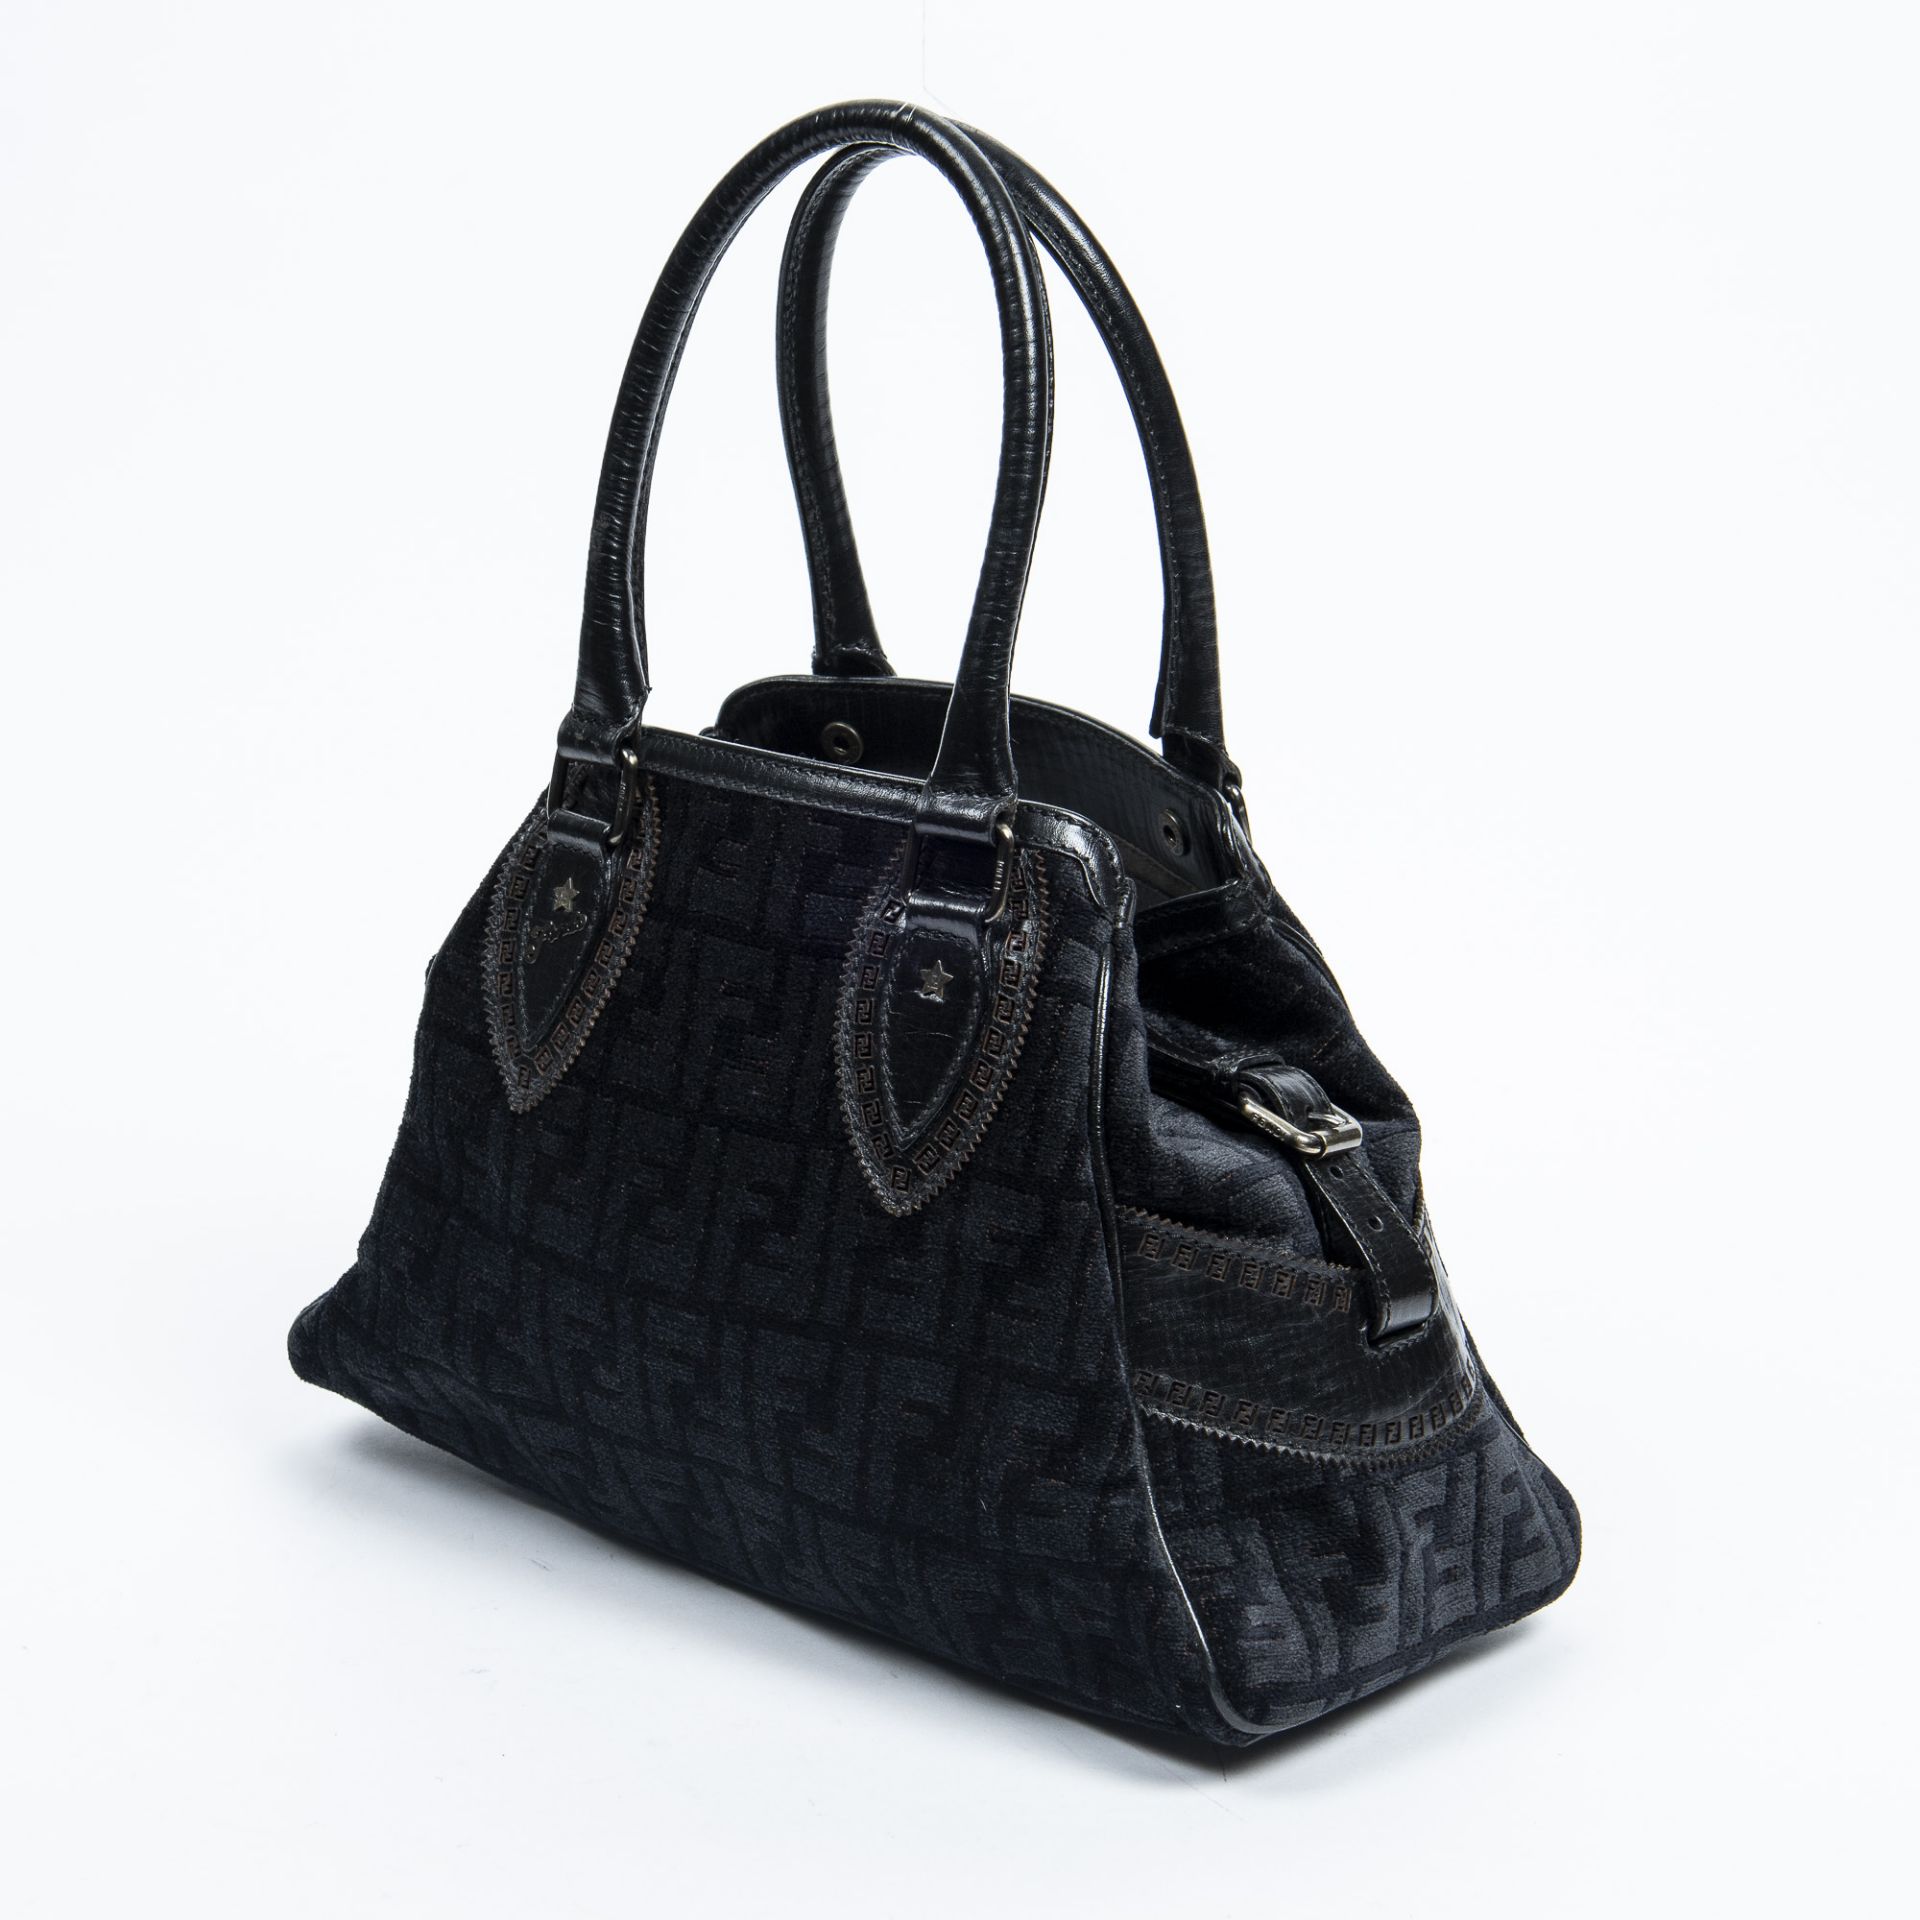 RRP £945.00 Lot To Contain 1 Fendi Canvas Du Jour Bag Handbag In Black - 31*23*13cm - A - - Image 2 of 4